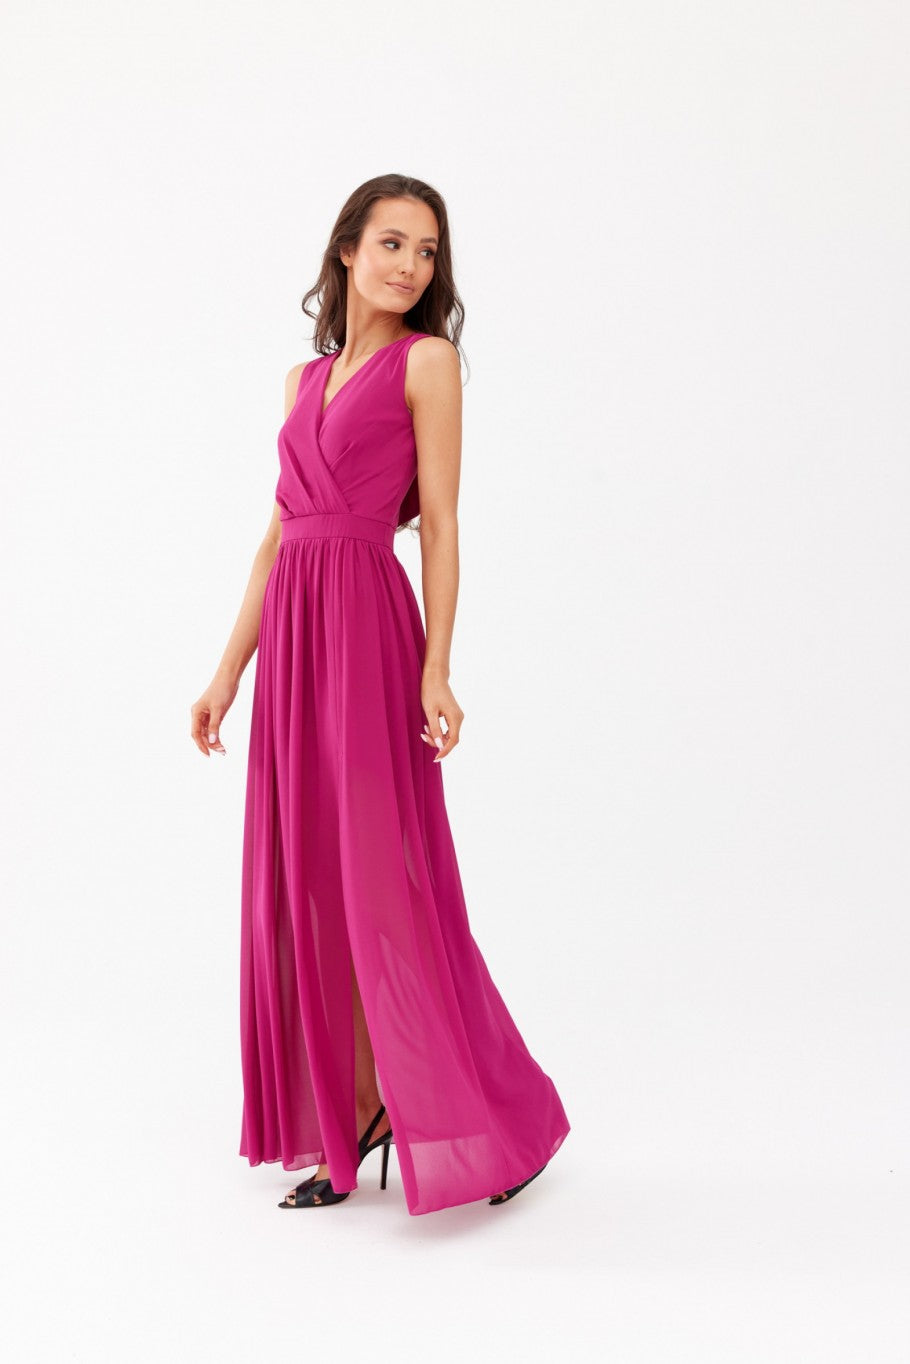 Mirabela - purpurowa sukienka maxi z kopertowym dekoltem i wiązaniem na plecach